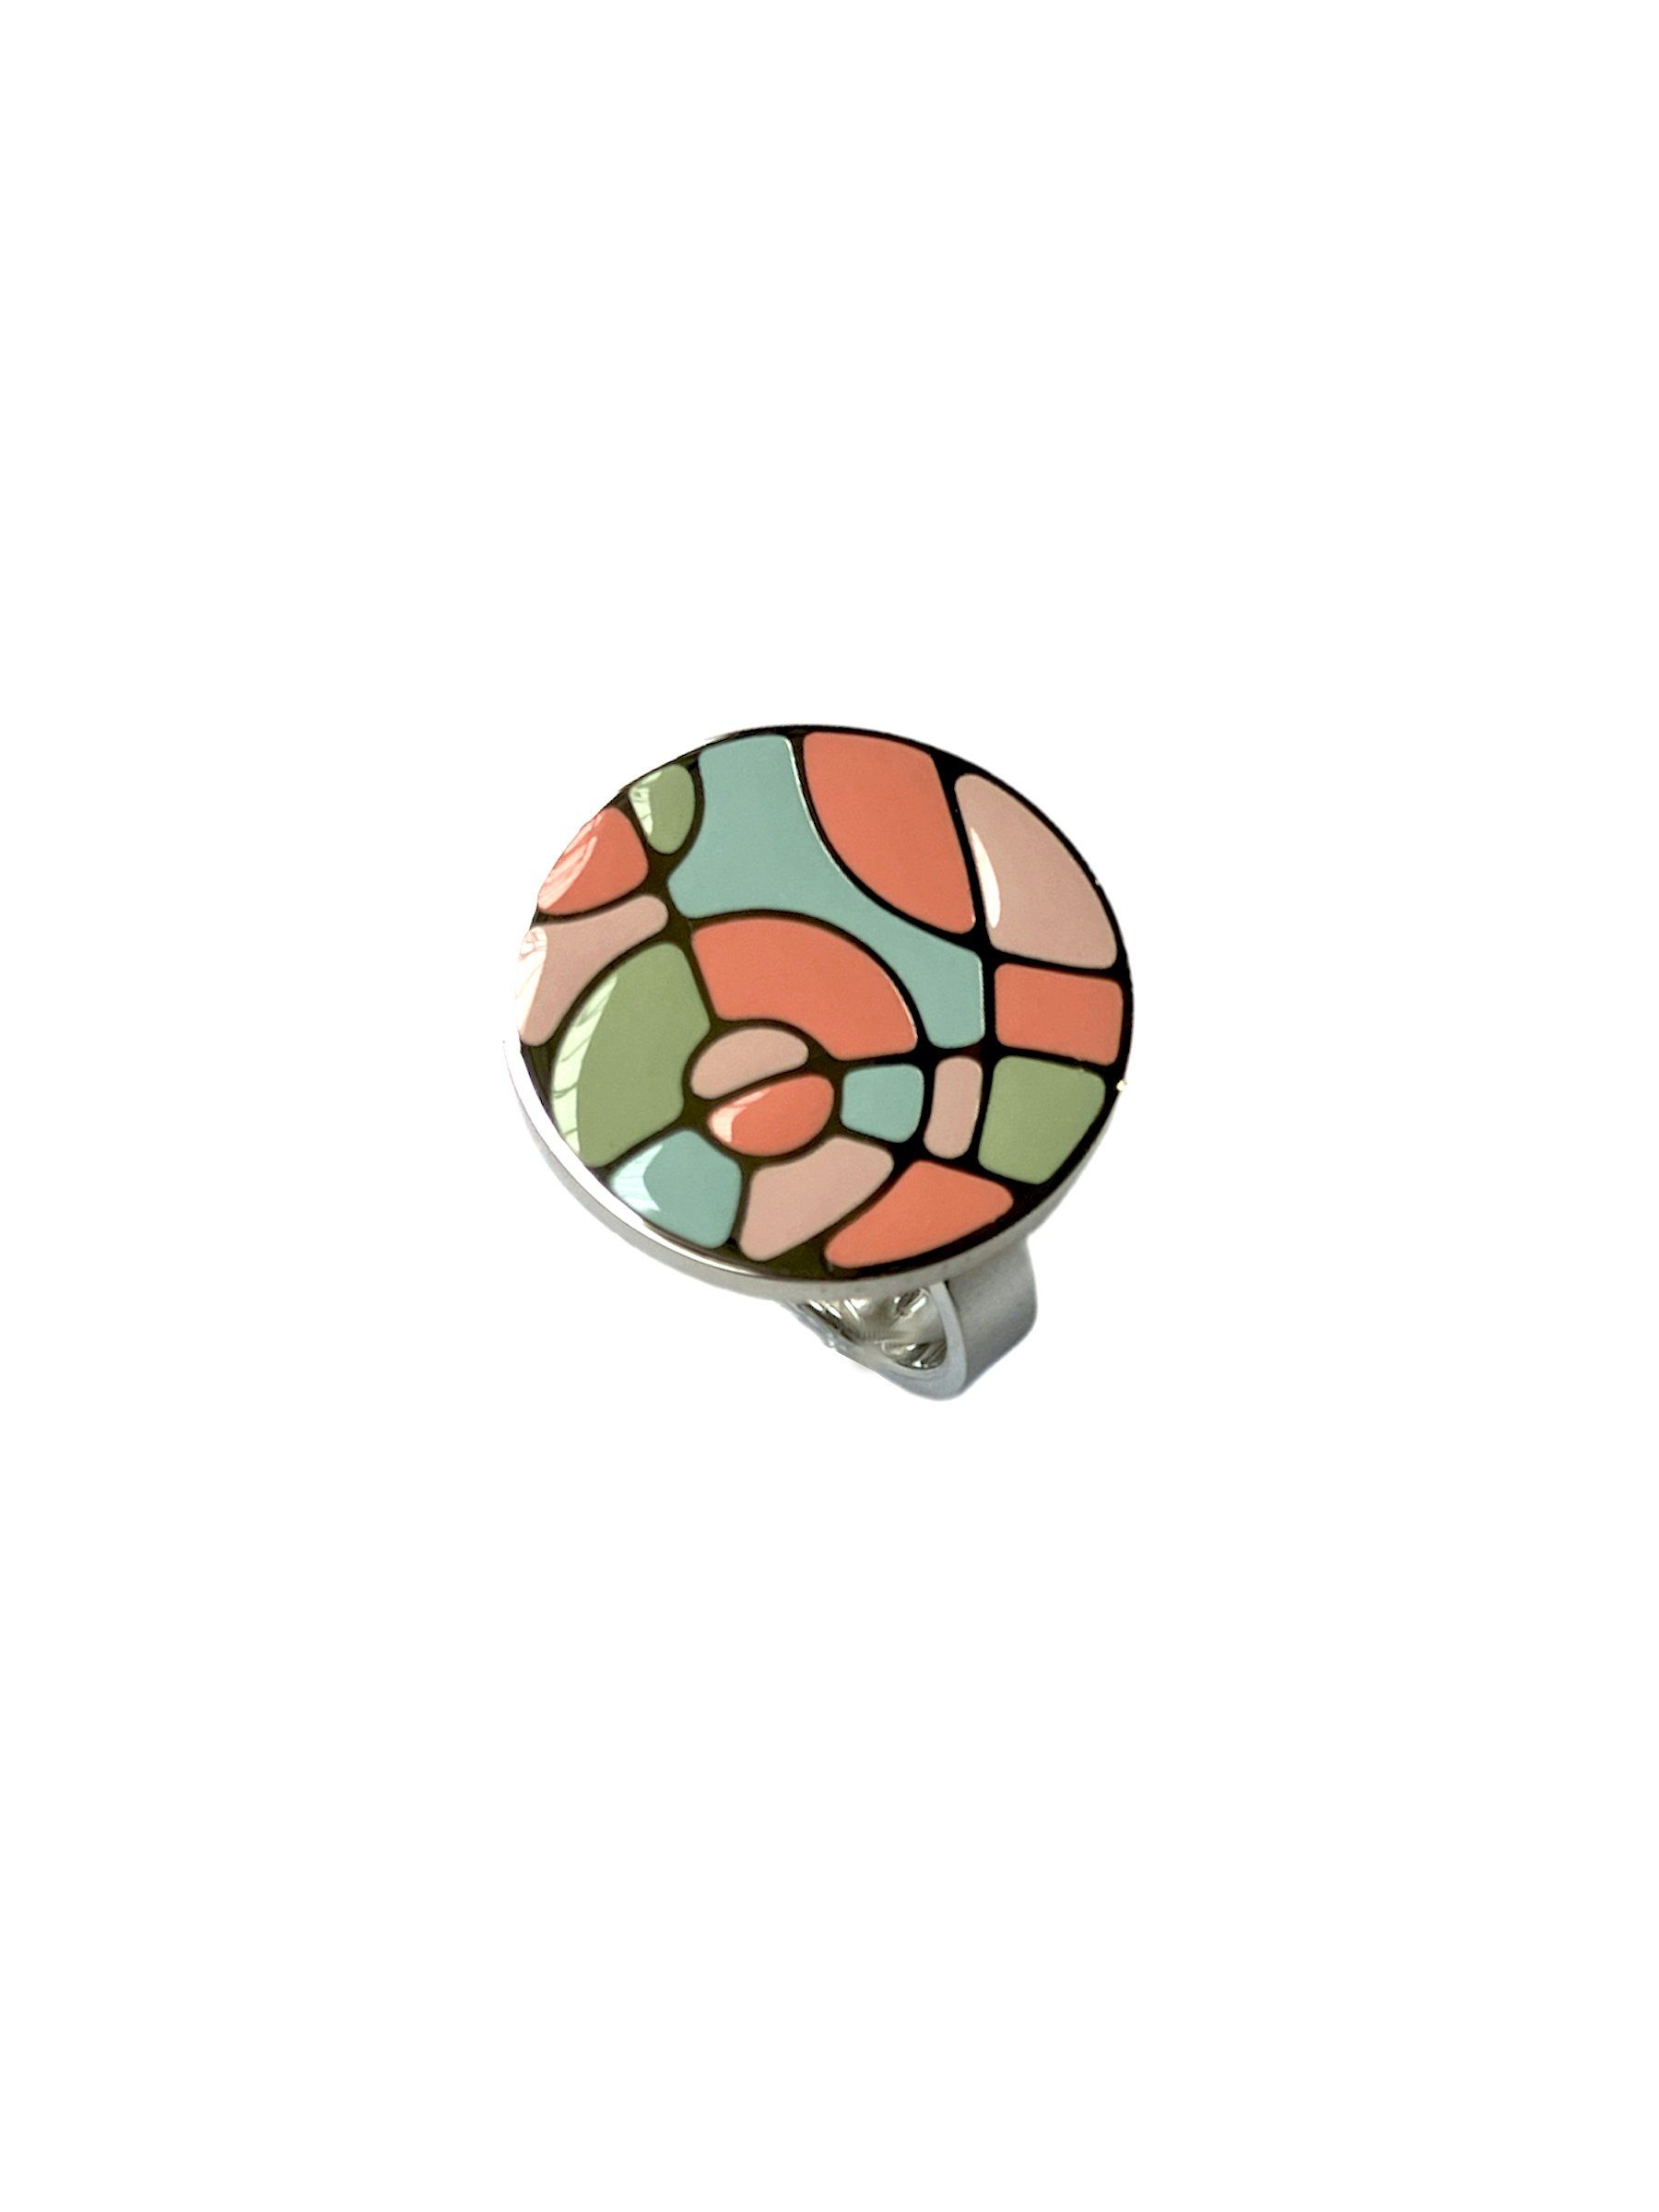 Swatch Bijoux Fingerring JRP029-8, Ringkopf Mosaik-Style mit Pastellfarben im